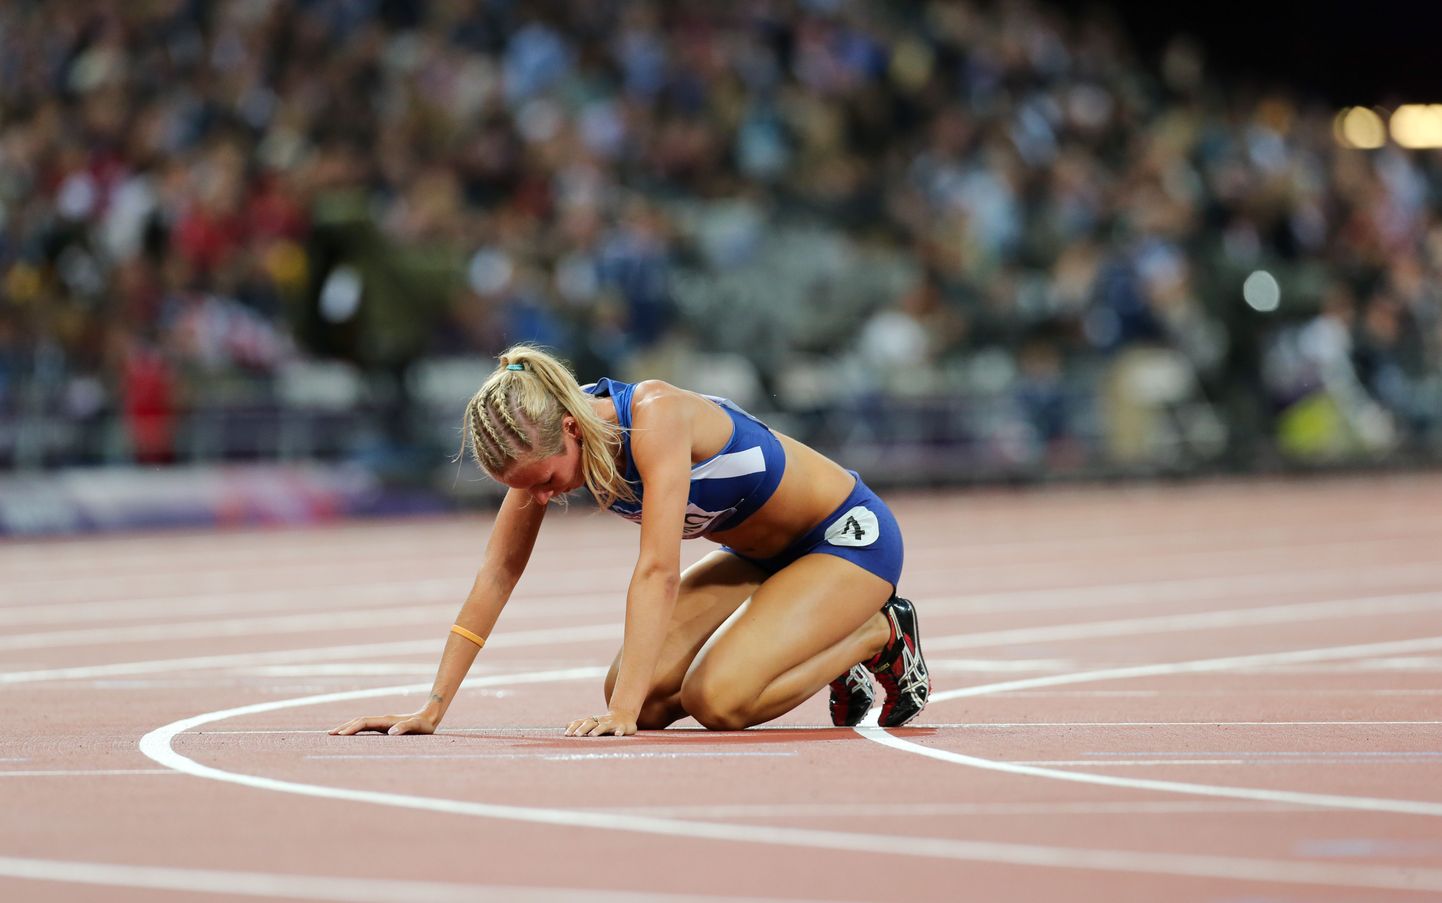 Grit Šadeiko sai Londoni olümpial seitsmevõistluses 22. koha.